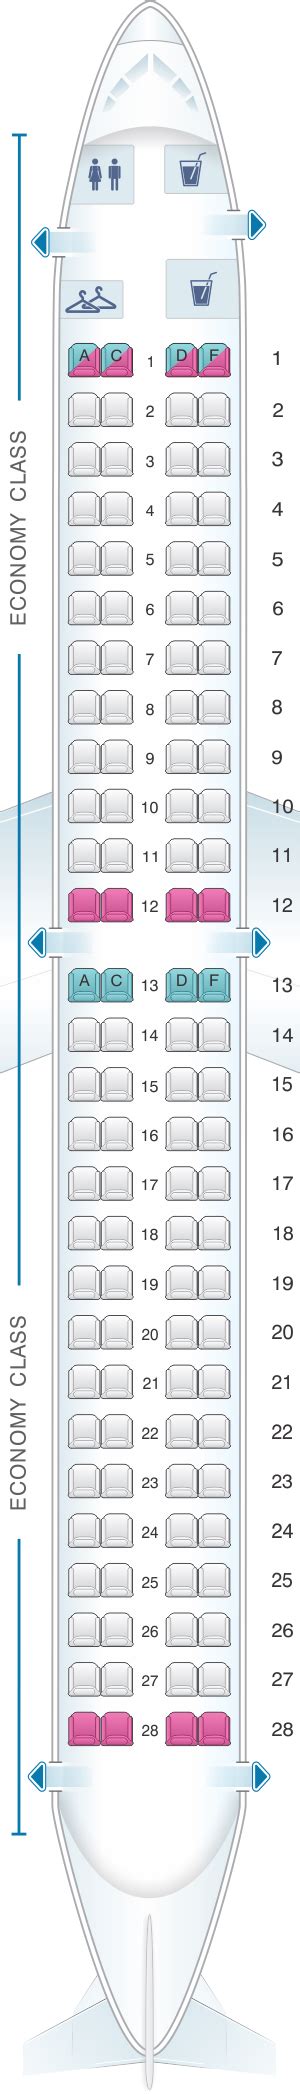 Seat Map Helvetic Airways Embraer 190